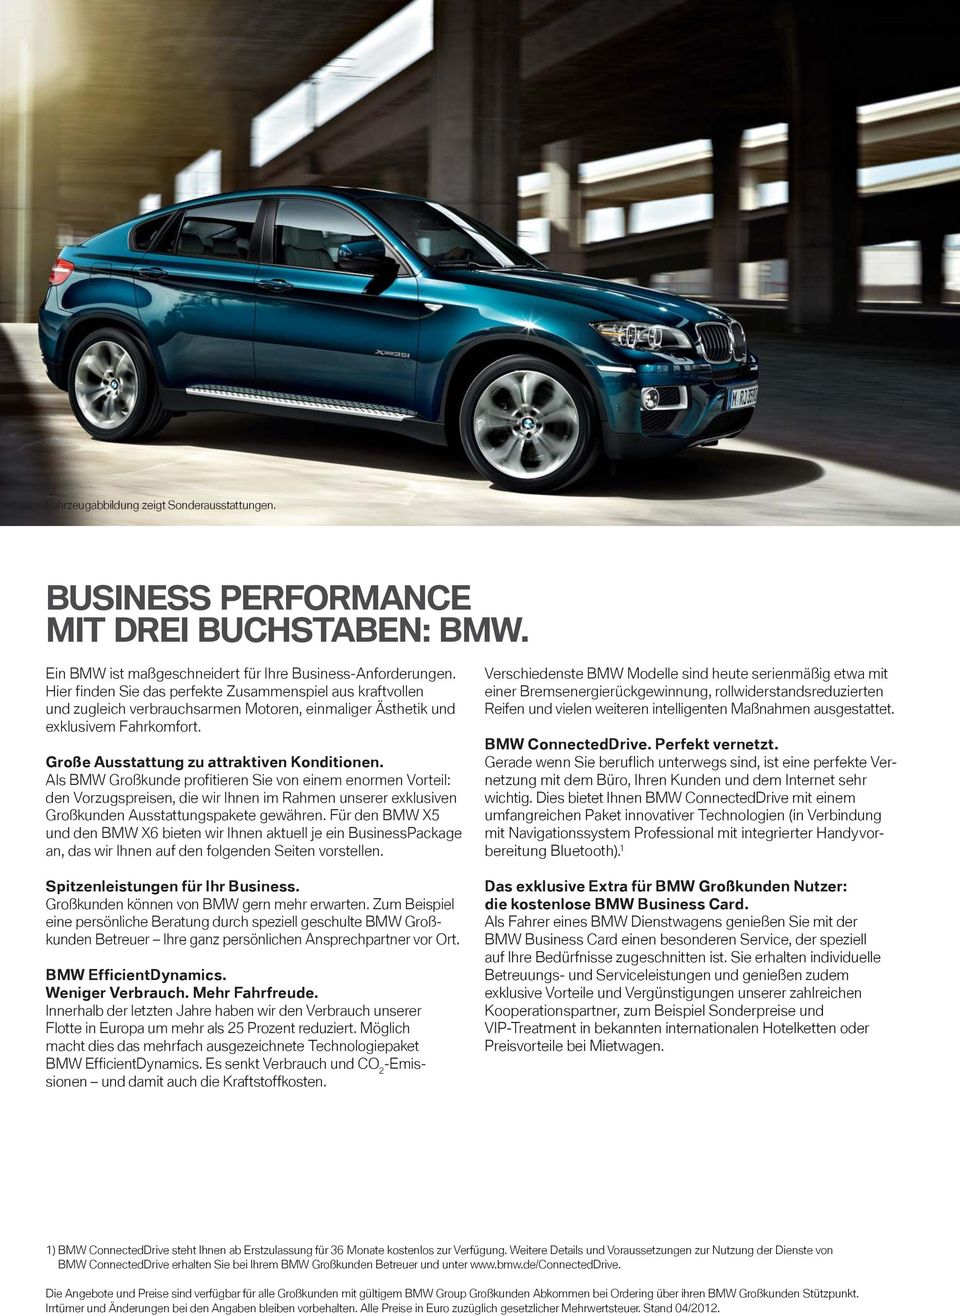 Als BMW Großkunde profitieren Sie von einem enormen Vorteil: den Vorzugspreisen, die wir Ihnen im Rahmen unserer exklusiven Großkunden Ausstattungspakete gewähren.